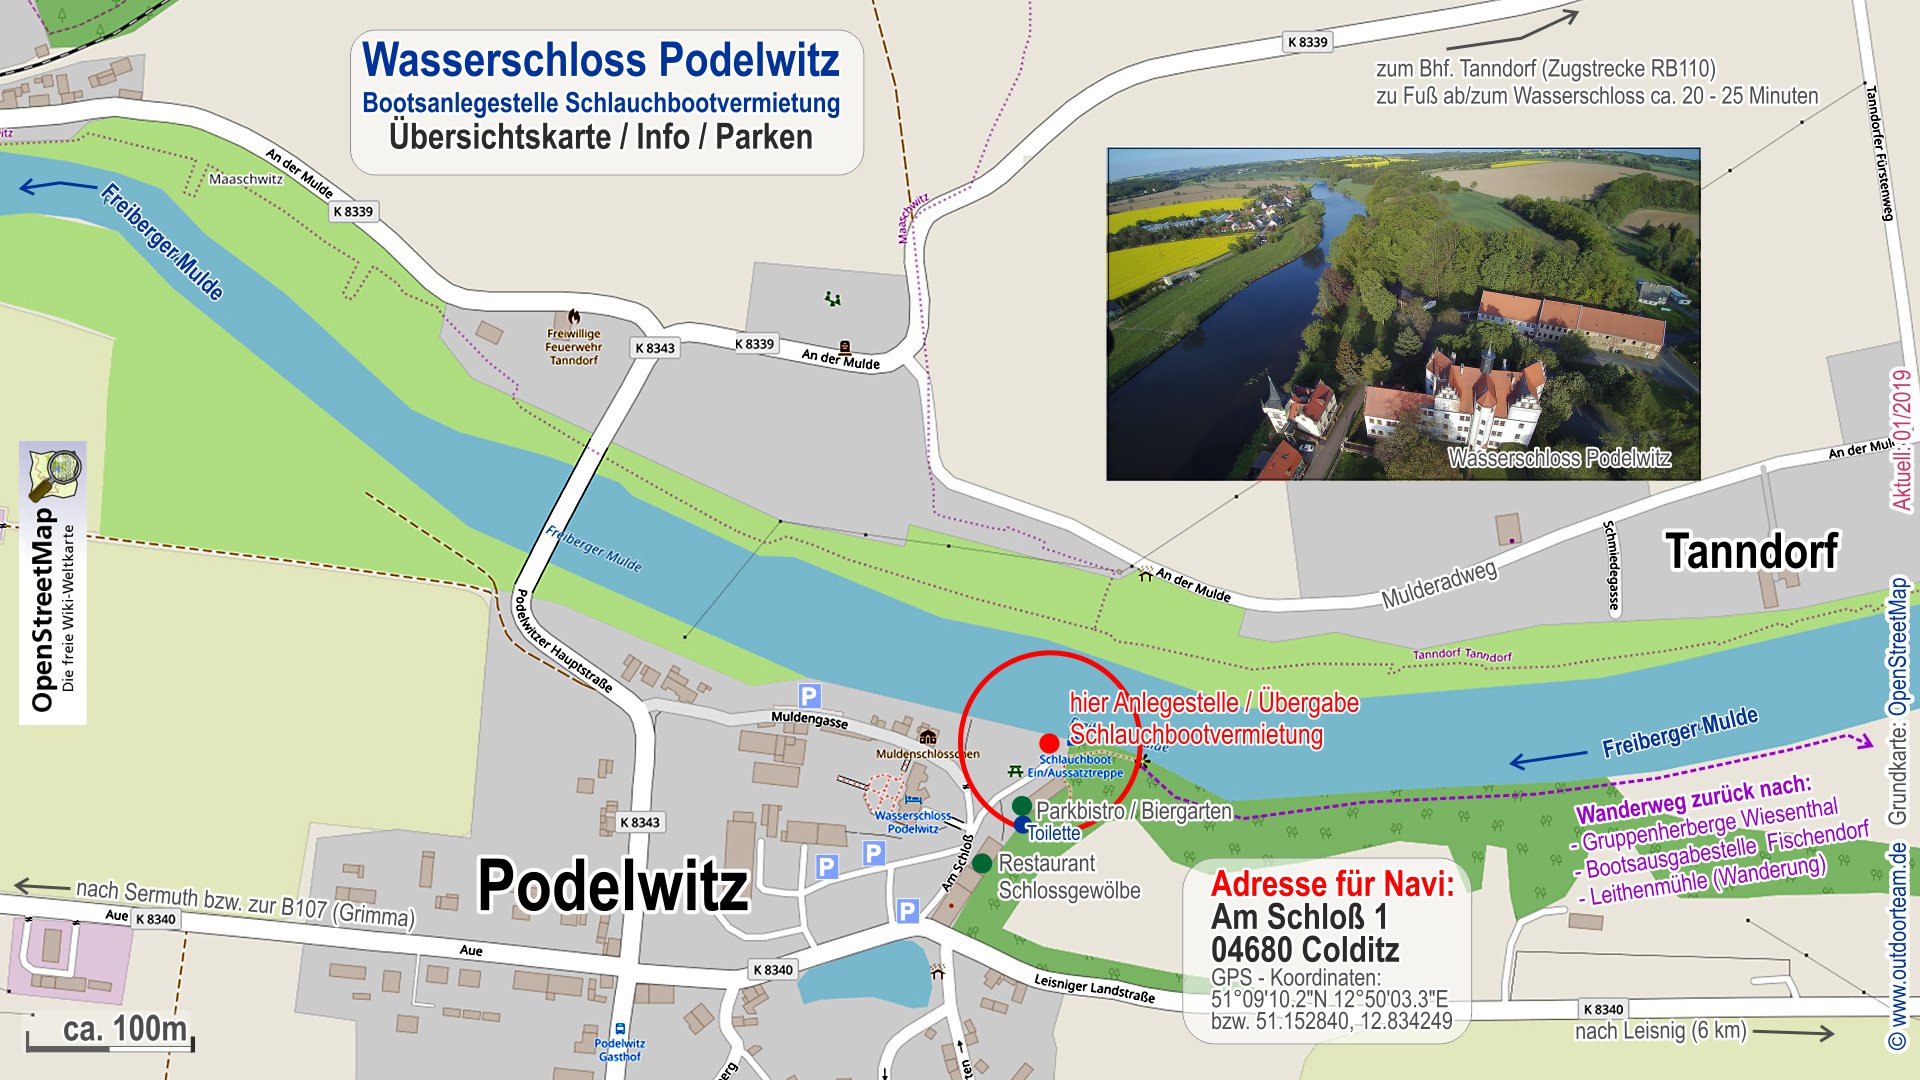 Detailkarte Ortsplan Wasserschloss Podelwitz - Tourende der Strecke "C" Schlauchbootvermietung Strecke von Leisnig bis zum Wasserschloss Podelwitz